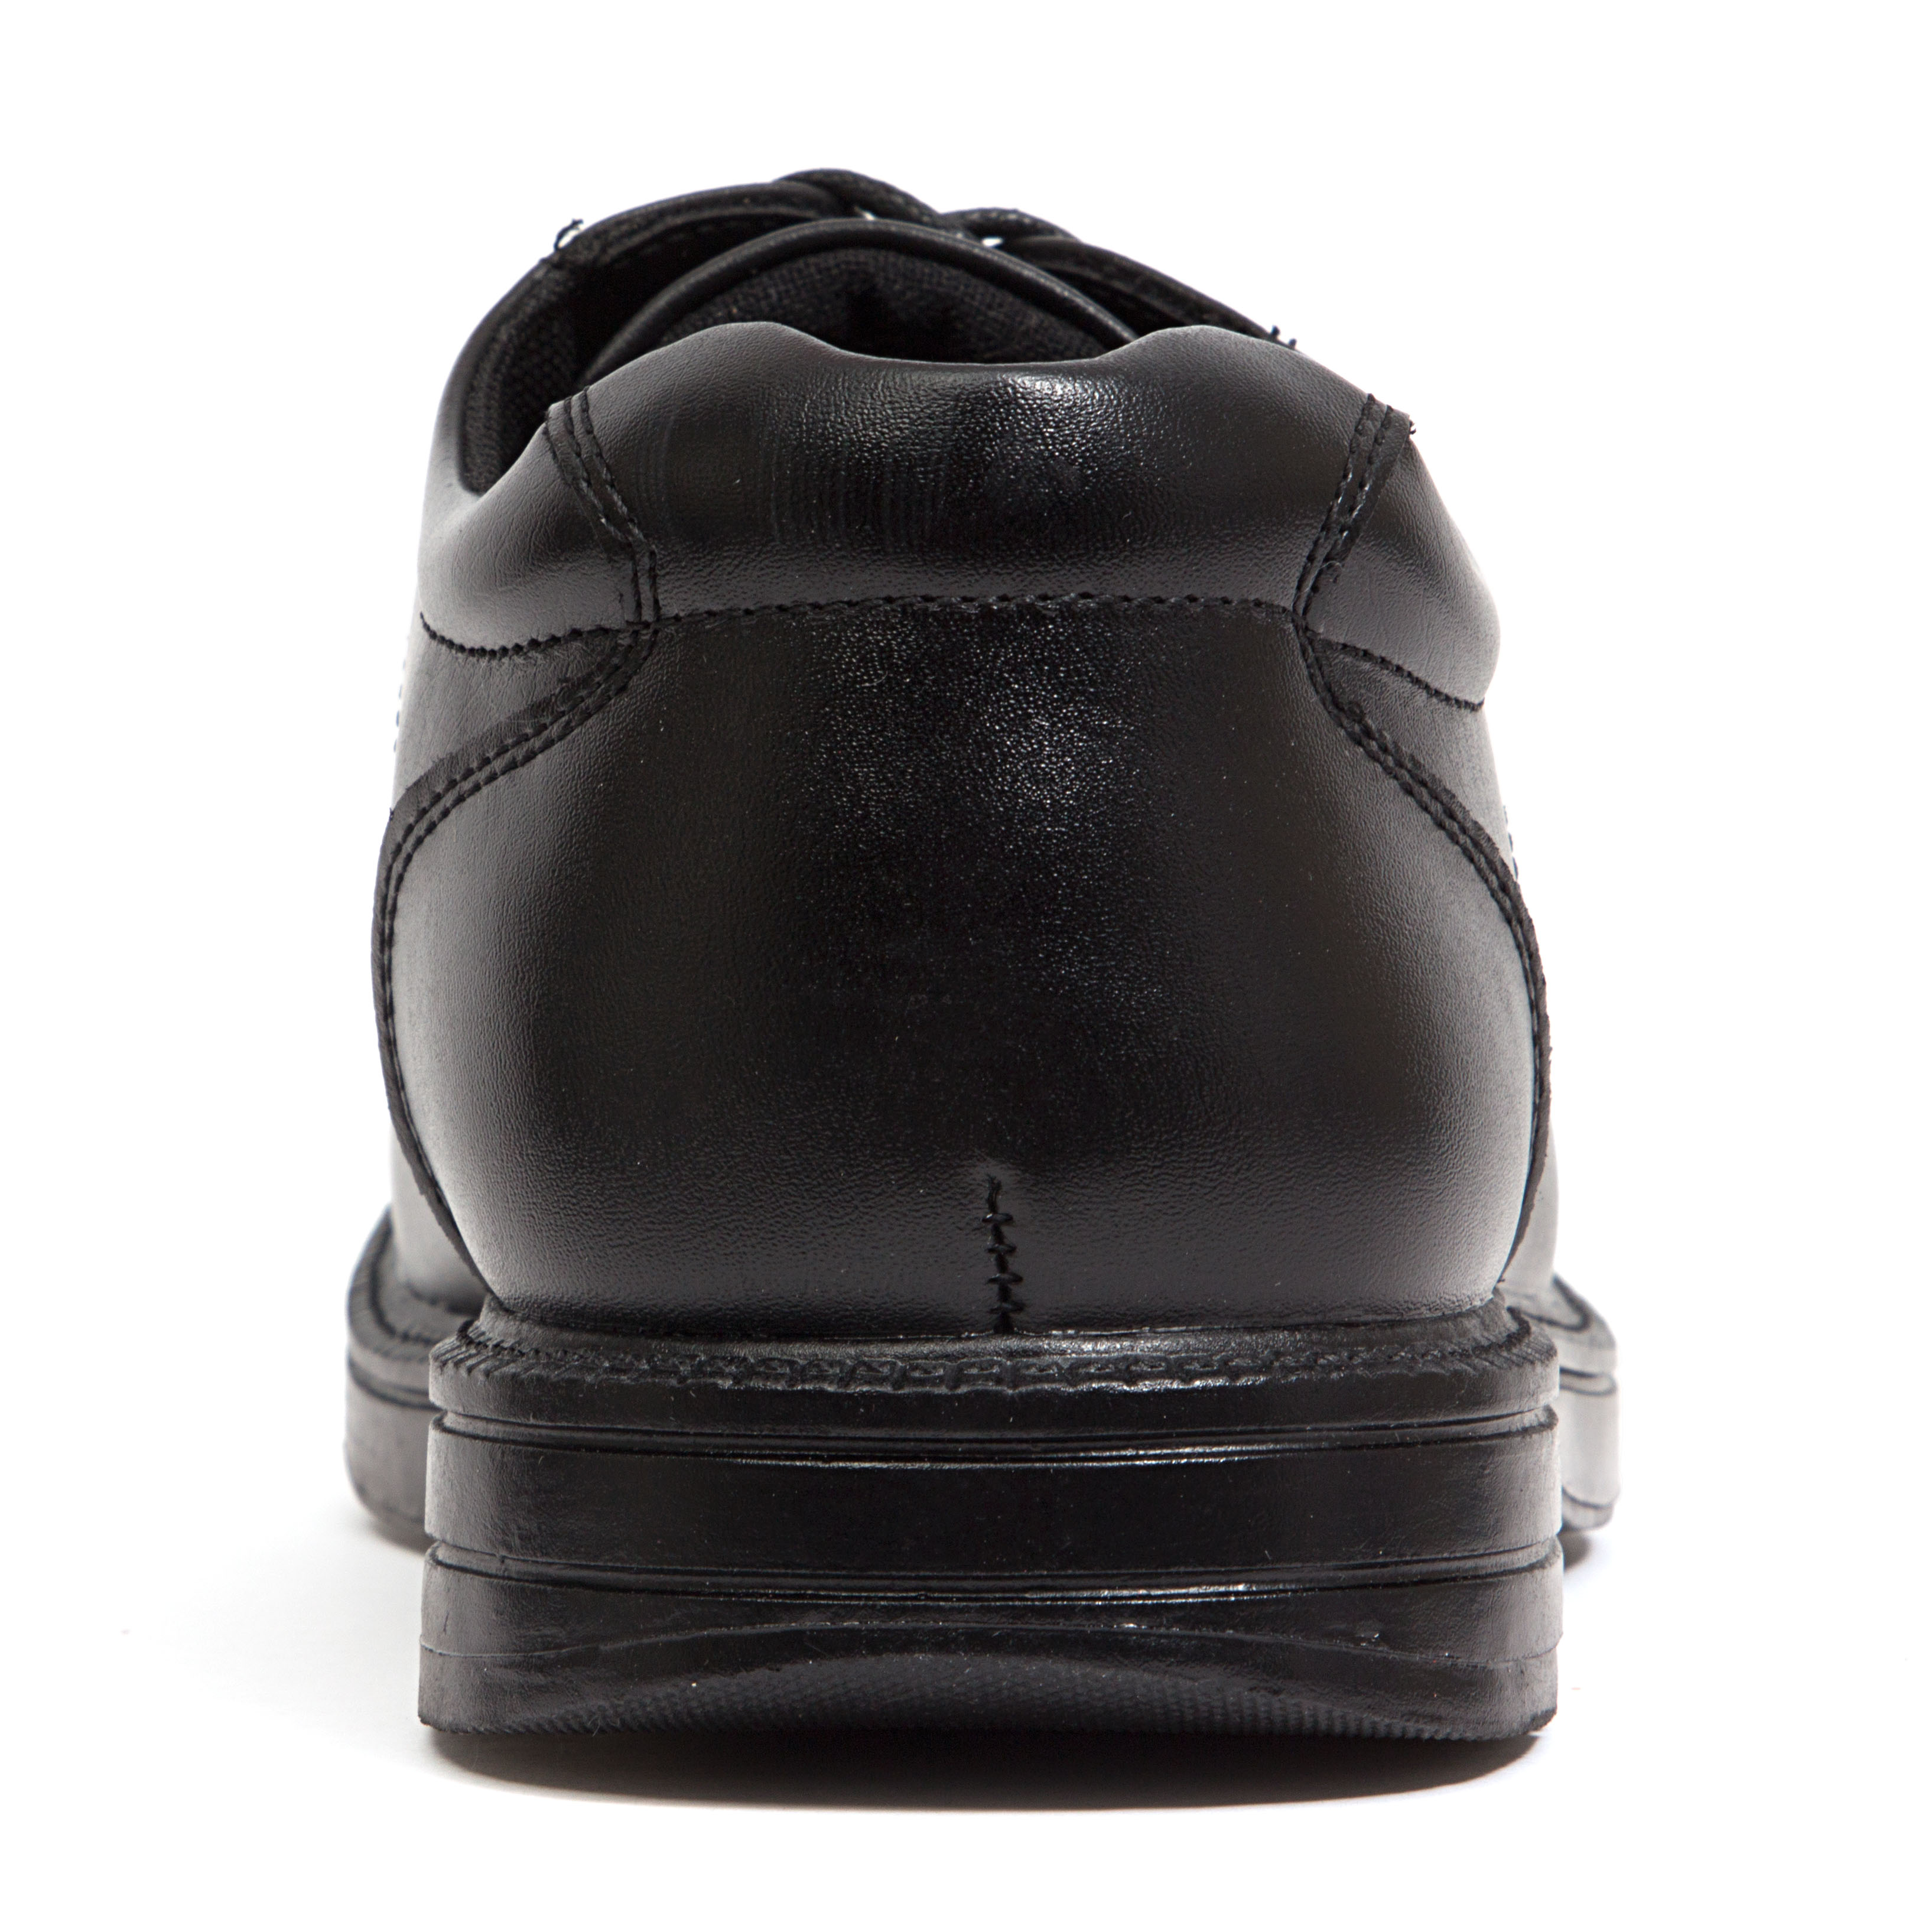 Deer Stags Men's Nu Times Waterproof Slip-Resistant Leather Oxford - Black - 10.5 Medium - image 5 of 5